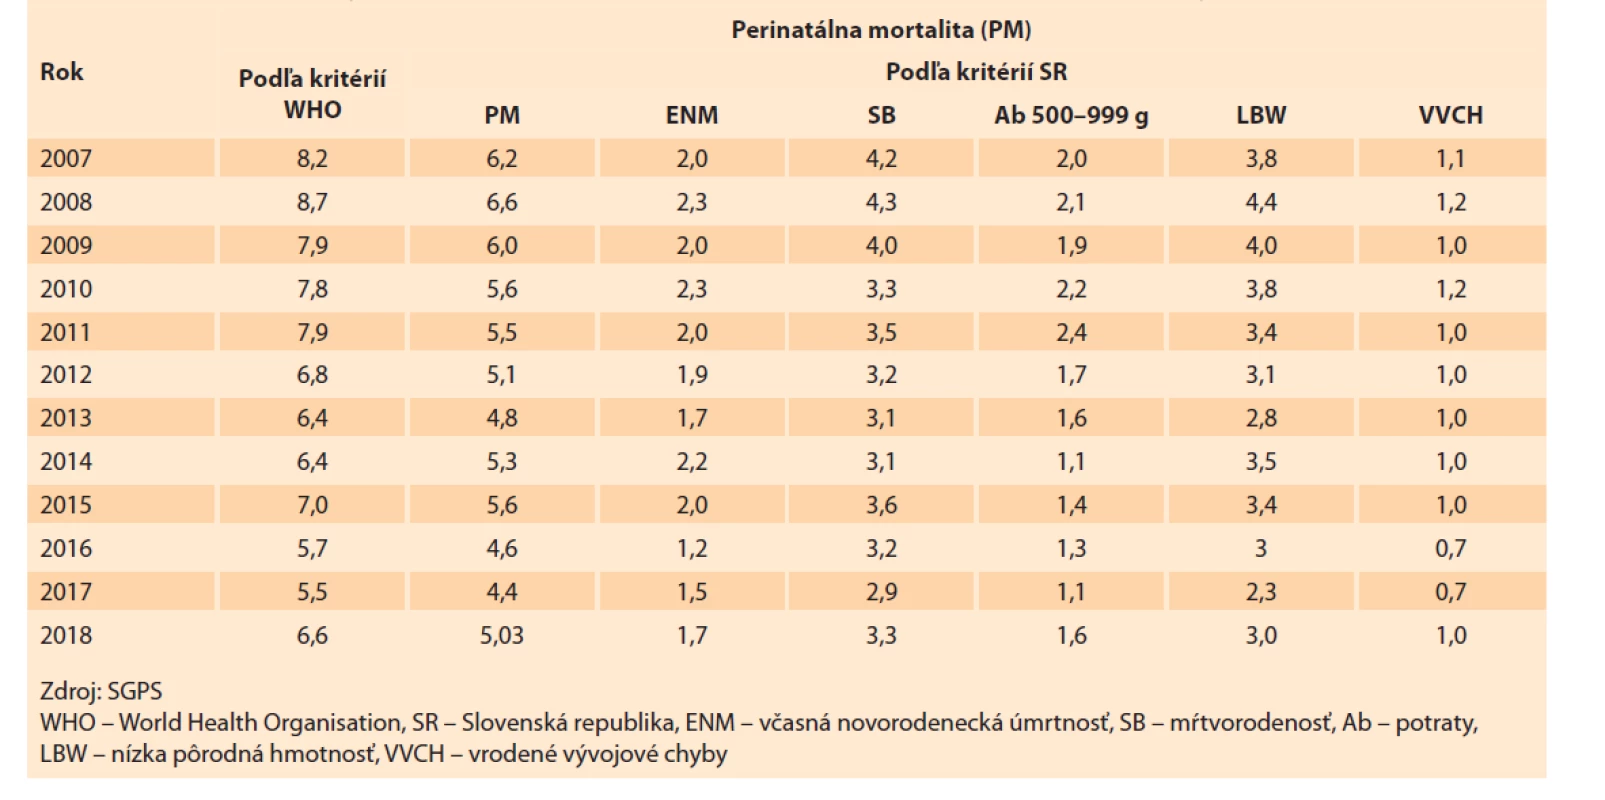 Perinatálna mortalita (‰) podľa kritérií Slovenské republiky a WHO v rokoch 2007–2018.<br>
Tab. 10. Perinatal mortality (‰) according to the criteria of the Slovak Republic and WHO in the years 2007–2018.